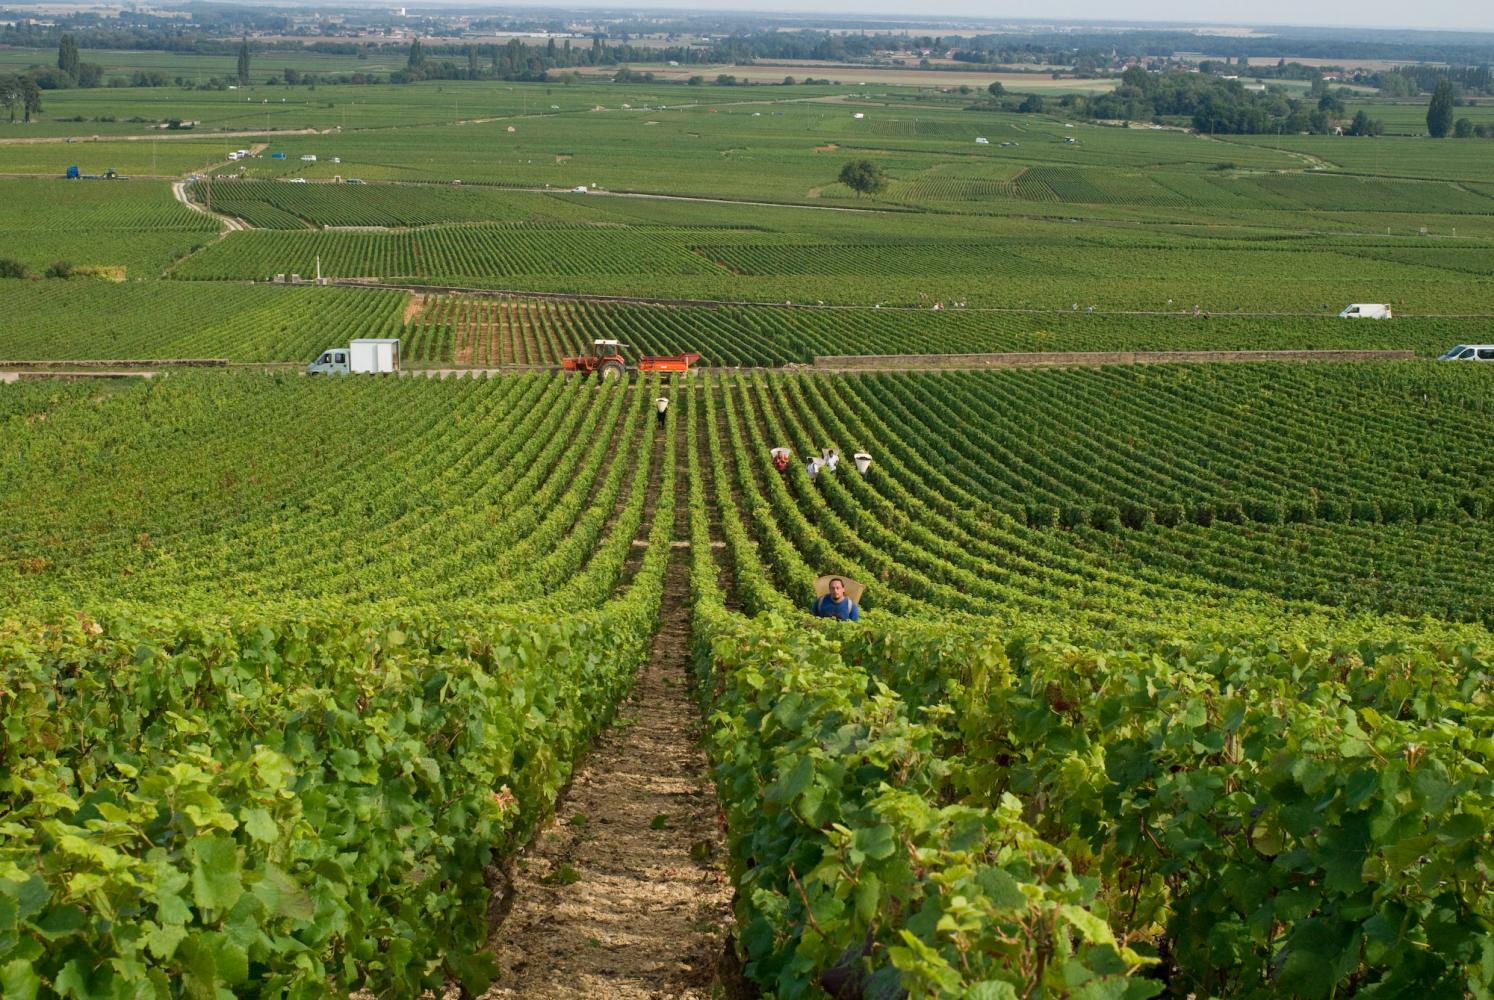 Attente en haut d'une colline : des vignobles à perte de vue, et les porteurs qui remontent les rangs. Pommard, Bourgogne, septembre 2009.